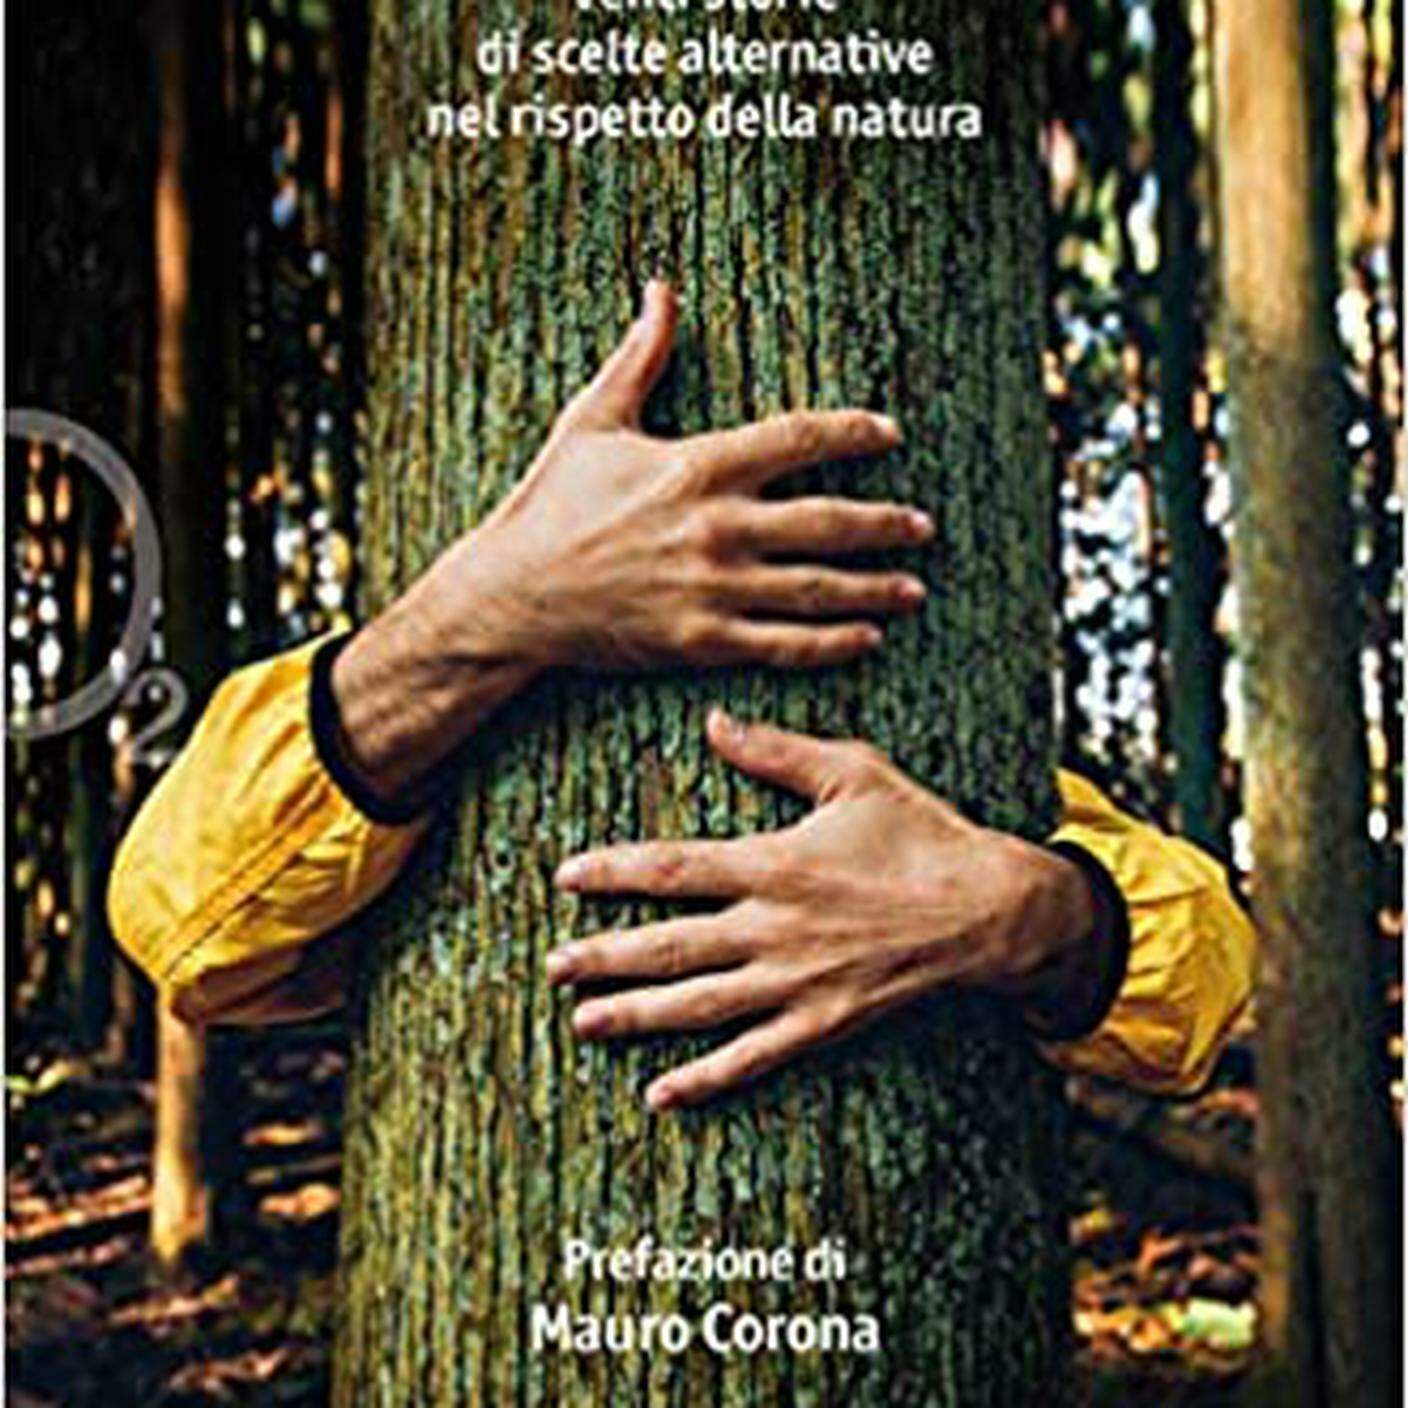 “Ecosfide. 20 storie di scelte alternative nel rispetto della natura” di Vittorio Pierobon; Ediciclo Editore (dettaglio copertina) 